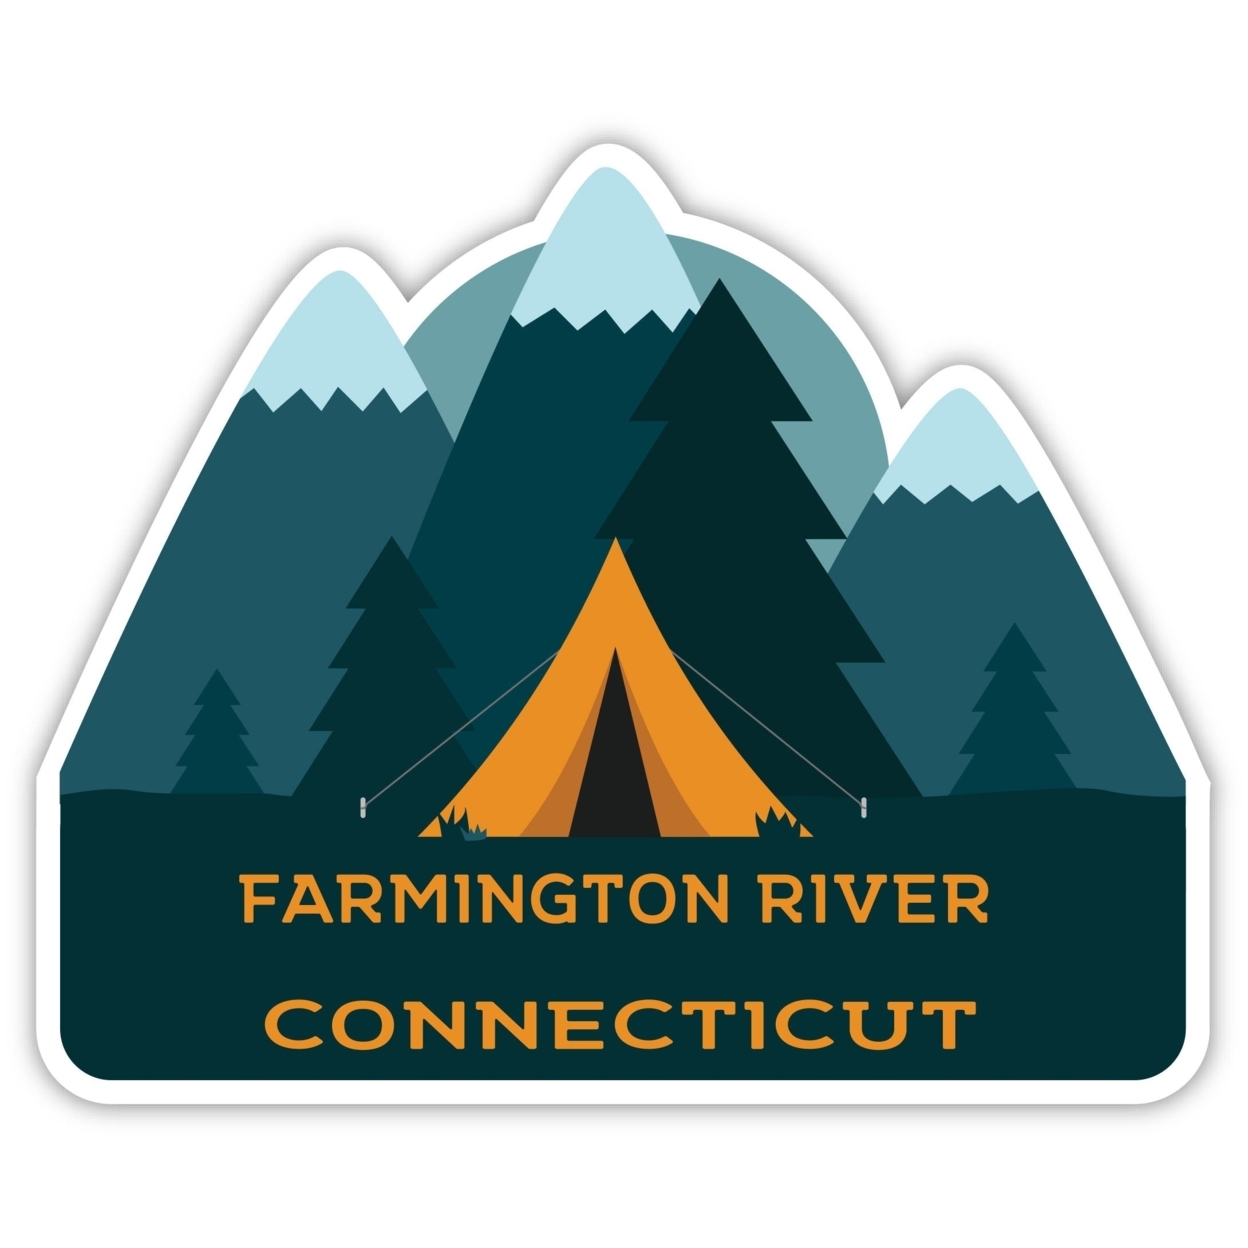 Farmington River Connecticut Souvenir Decorative Stickers (Choose Theme And Size) - 4-Pack, 2-Inch, Tent